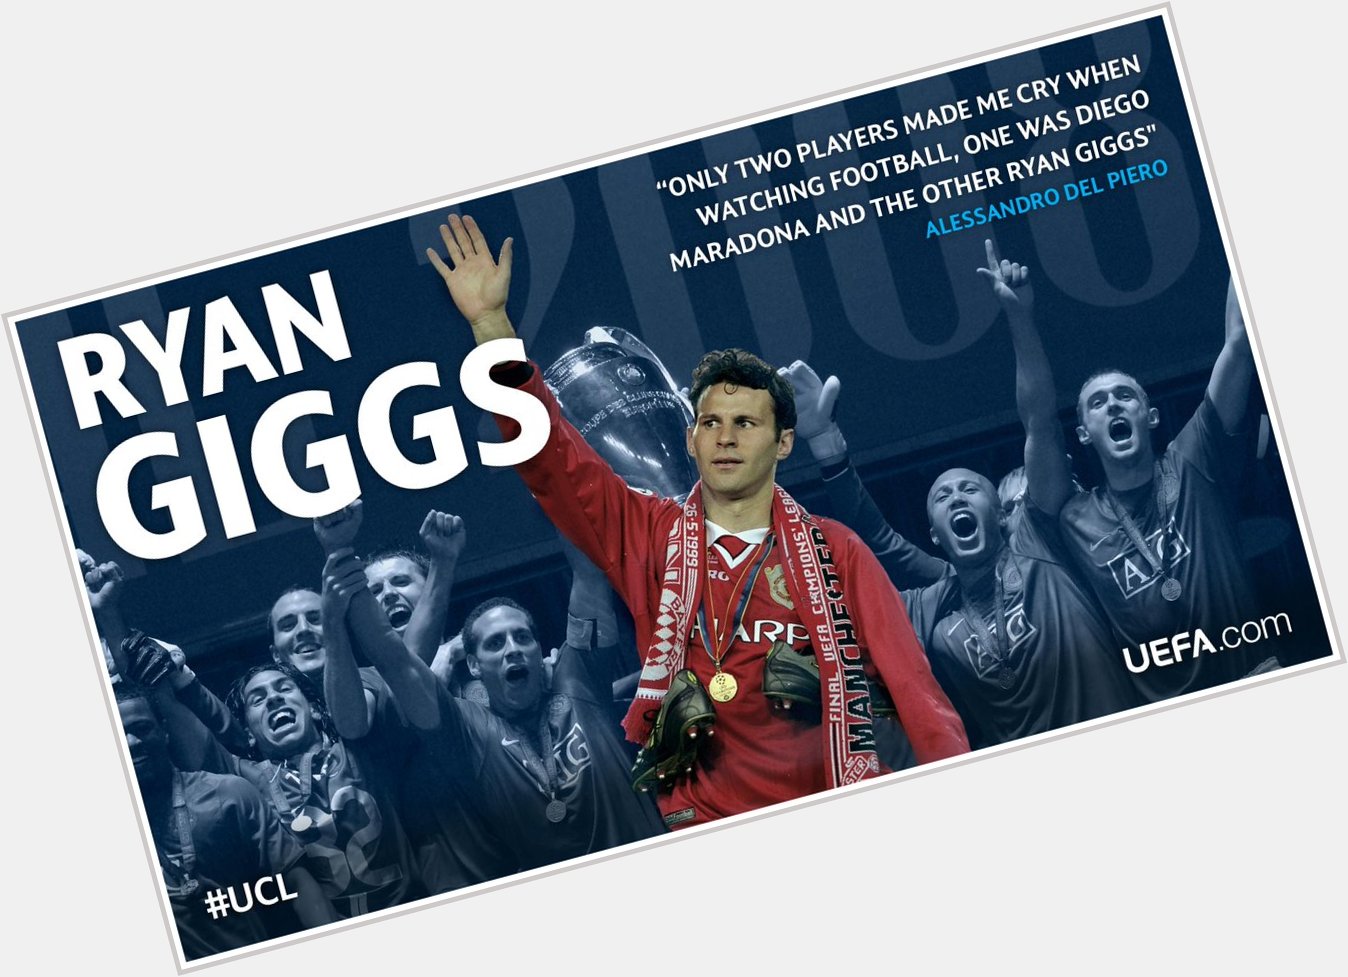 Happy Birthday Giggsy~ " Happy birthday to & legend Ryan Giggs! 